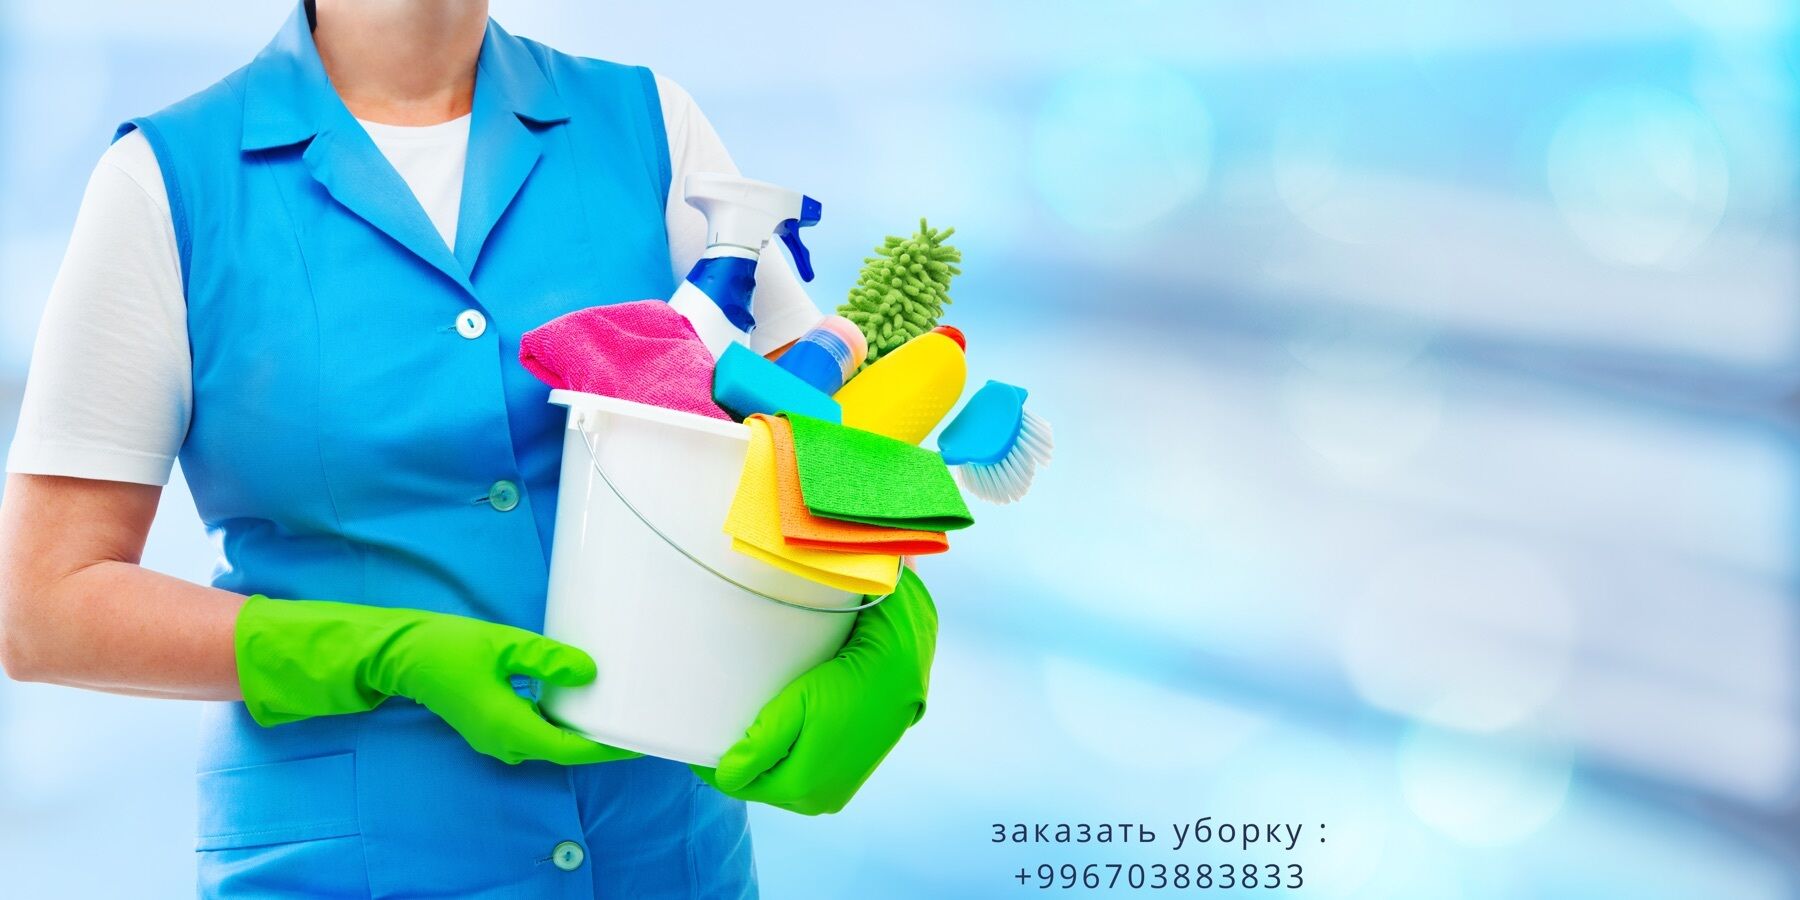 Уборка помещений,уборка квартир,уборка домов ➤ Кыргызстан ᐉ lalafo.kg-да компаниянын Бизнес-профили